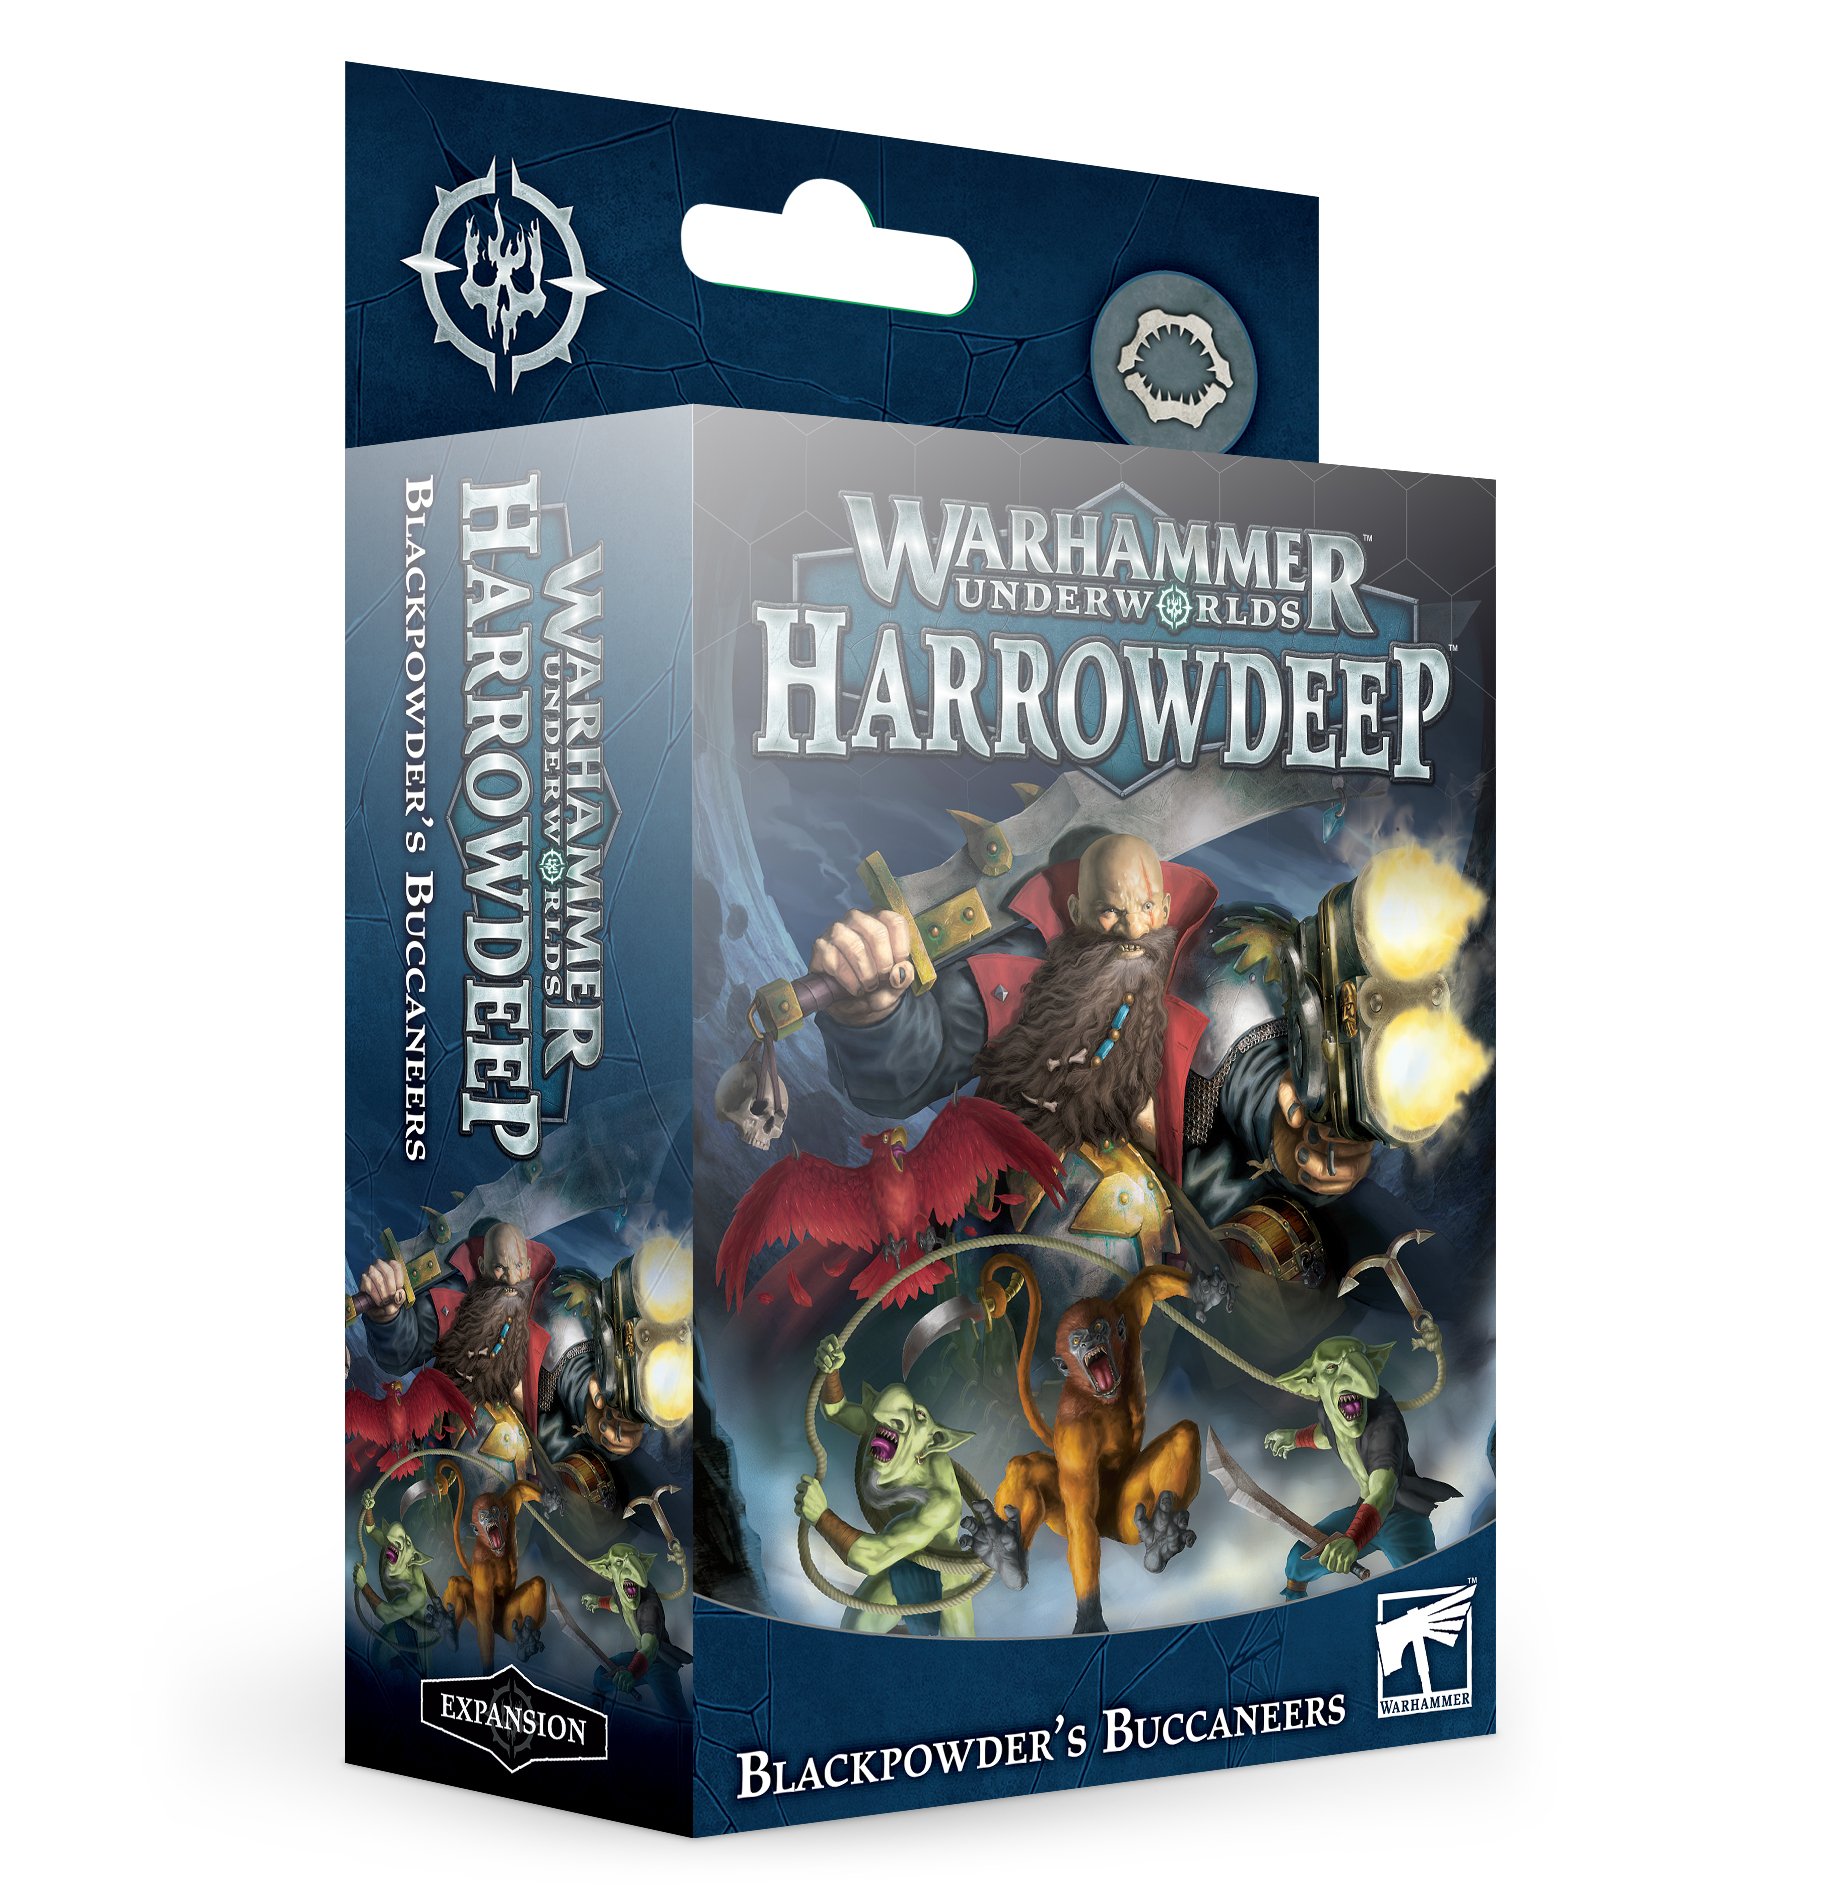 Warhammer Underworlds: Harrowdeep: Blackpowders Buccaneers 